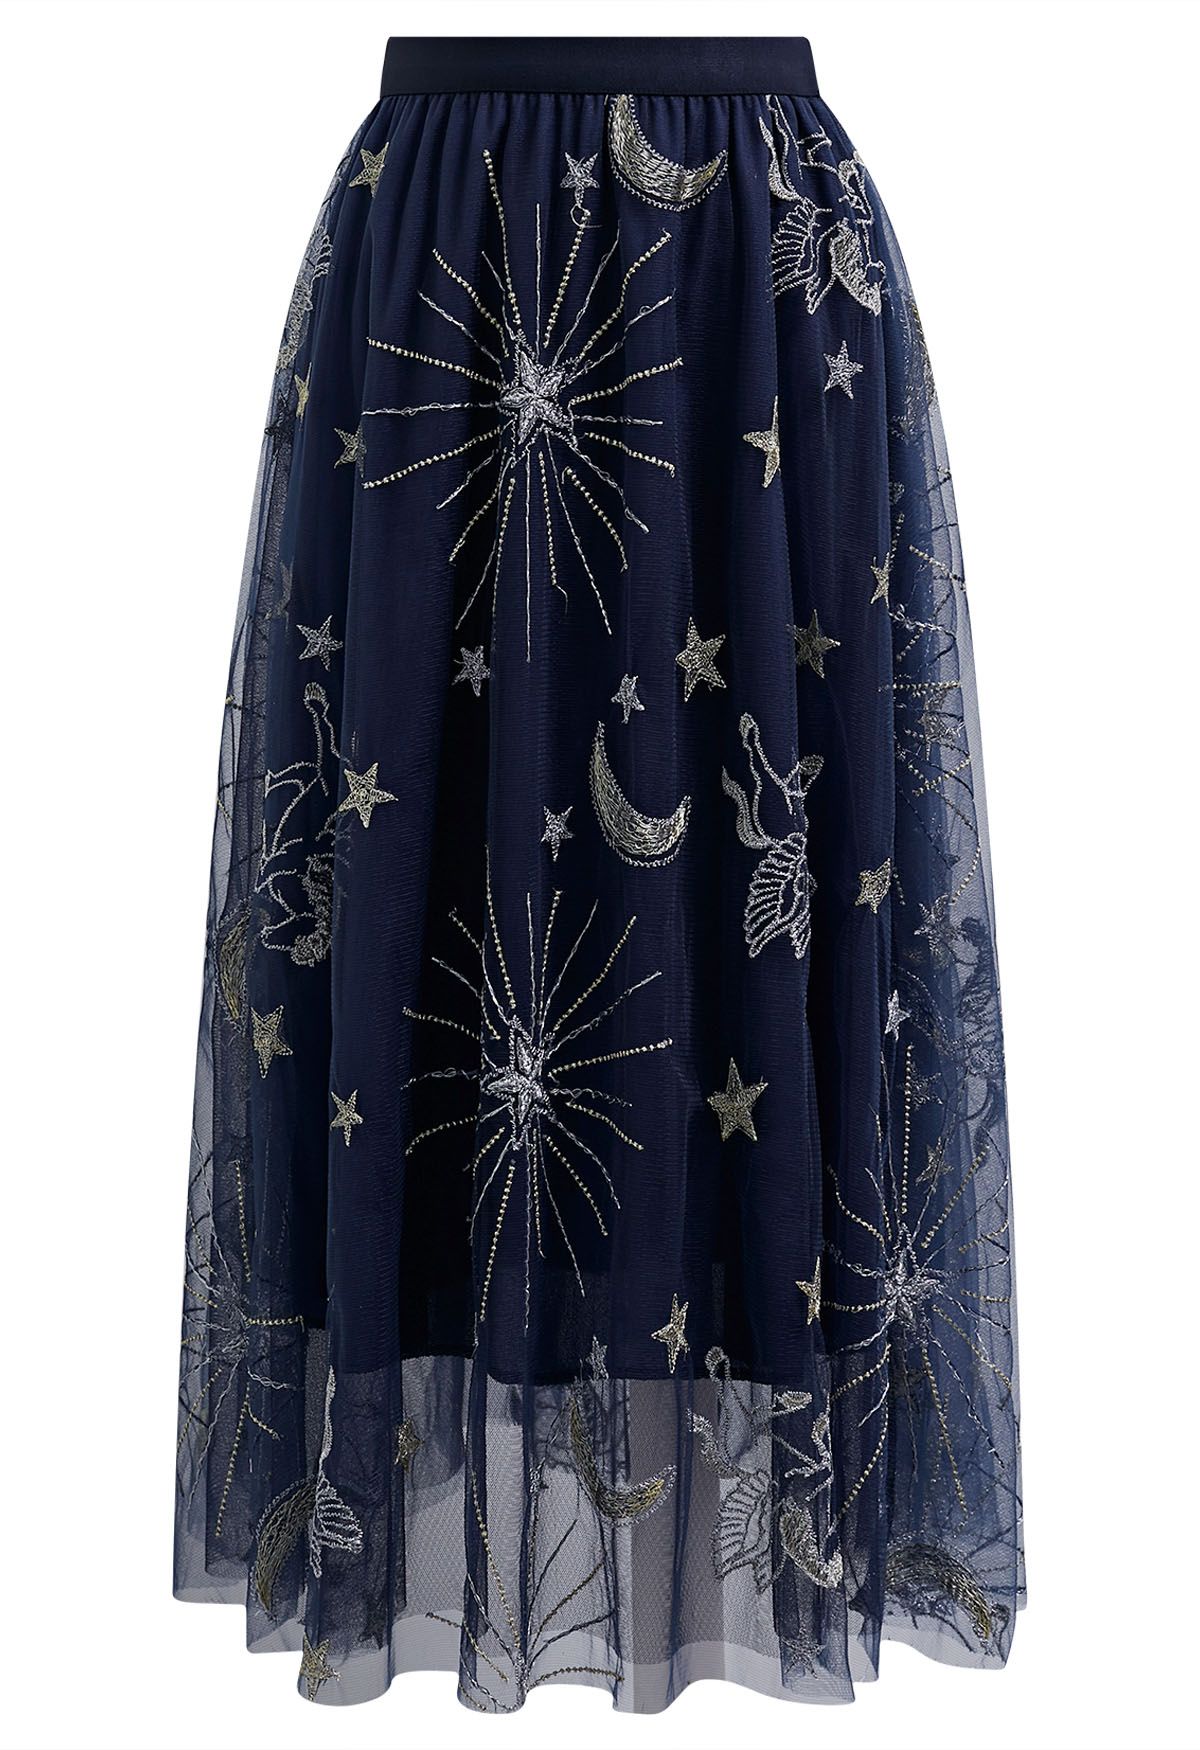 تنورة من قماش التول الشبكي المطرز بالقمر والنجمة الغامضة باللون الأزرق الداكن